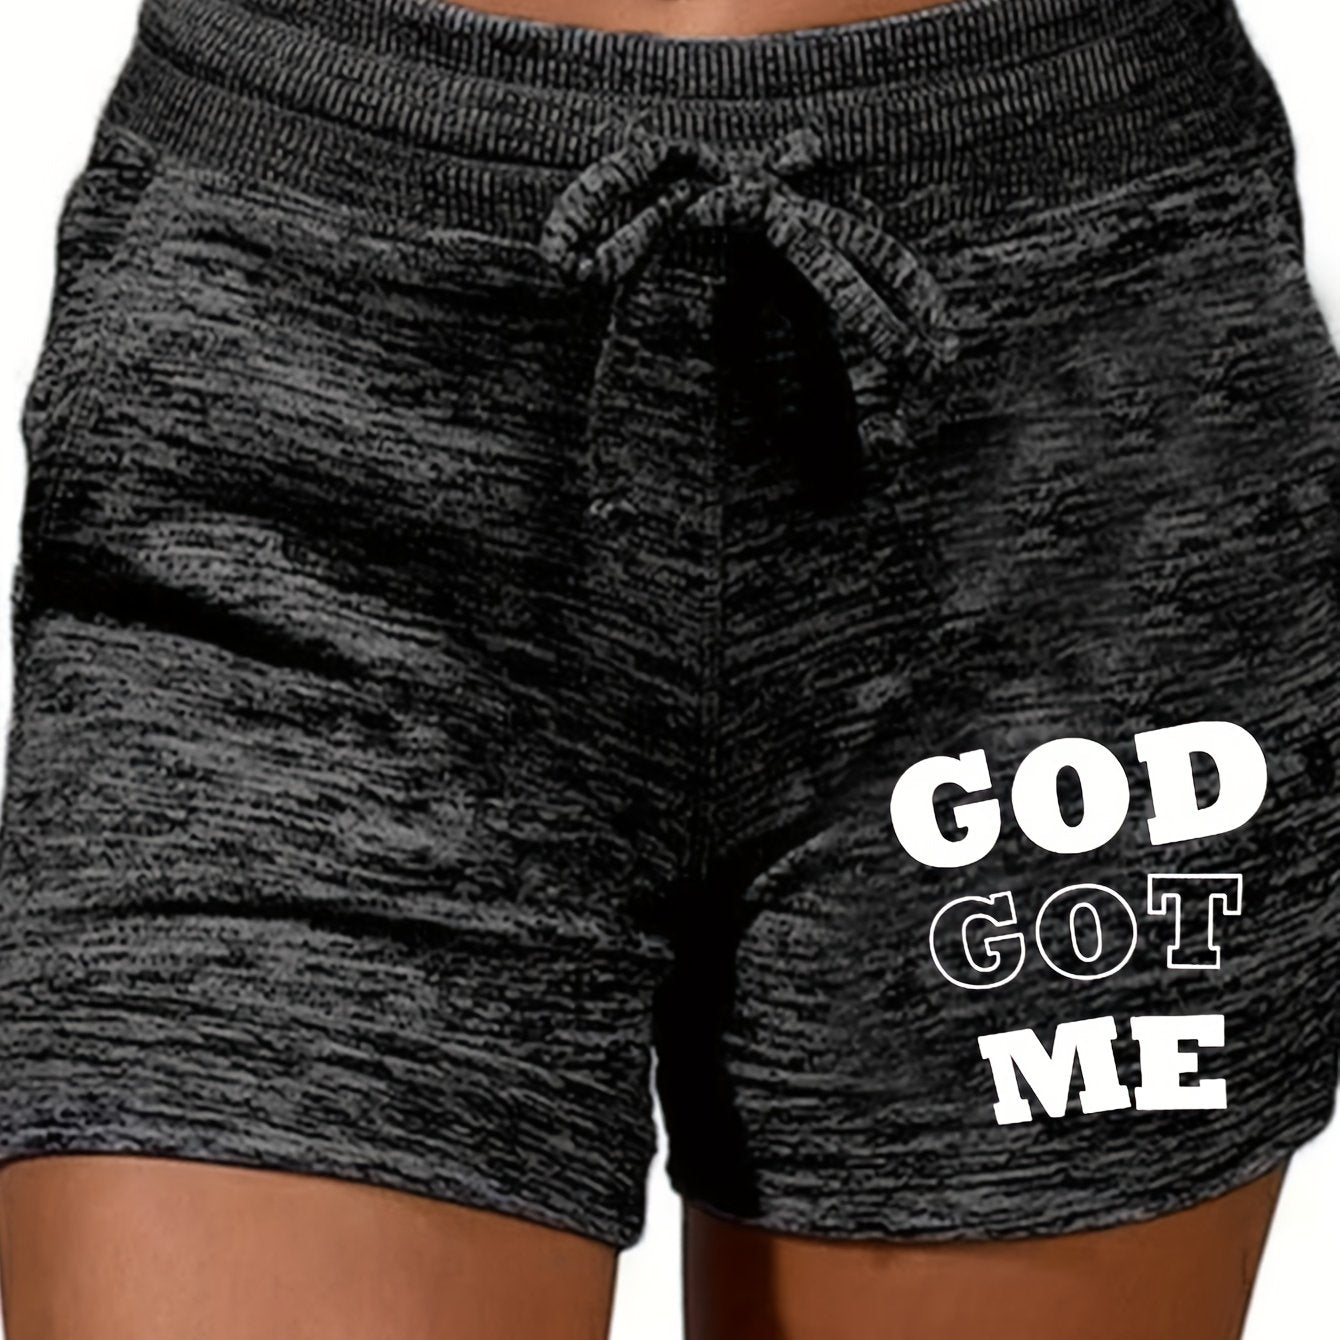 God Got Me Women's Christian Shorts claimedbygoddesigns